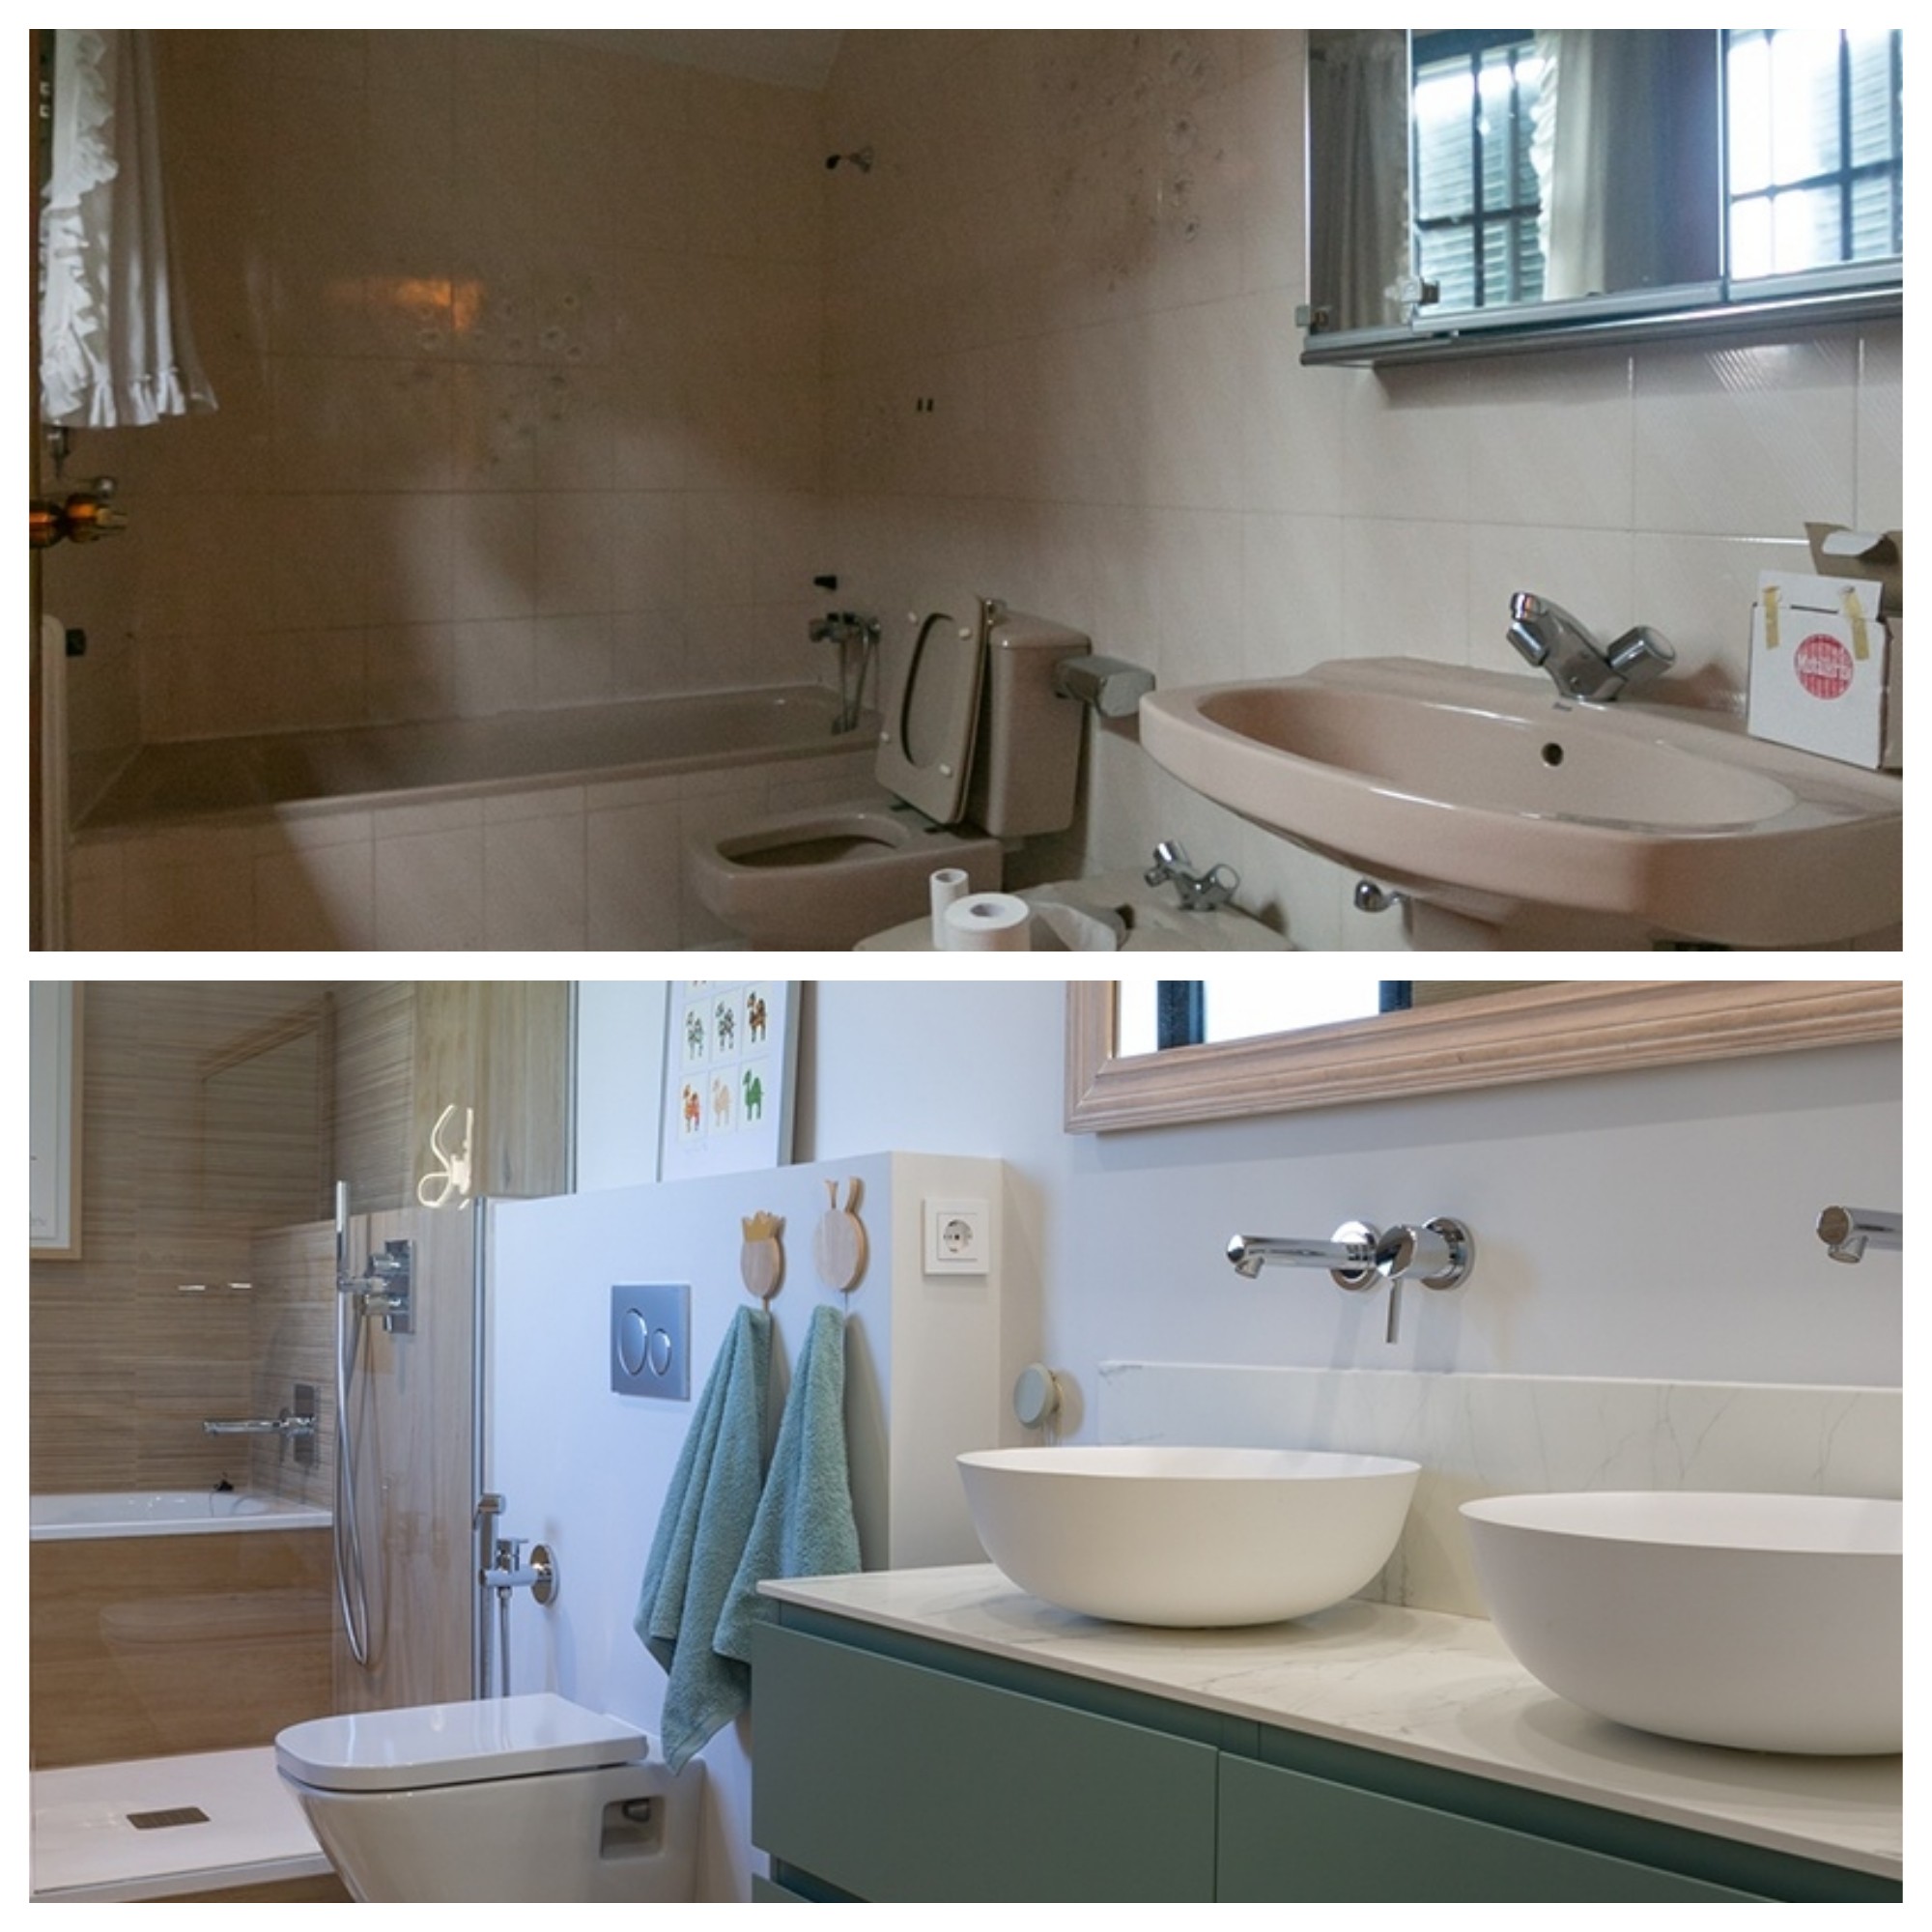 baños reformados antes y después , reforma baño doble